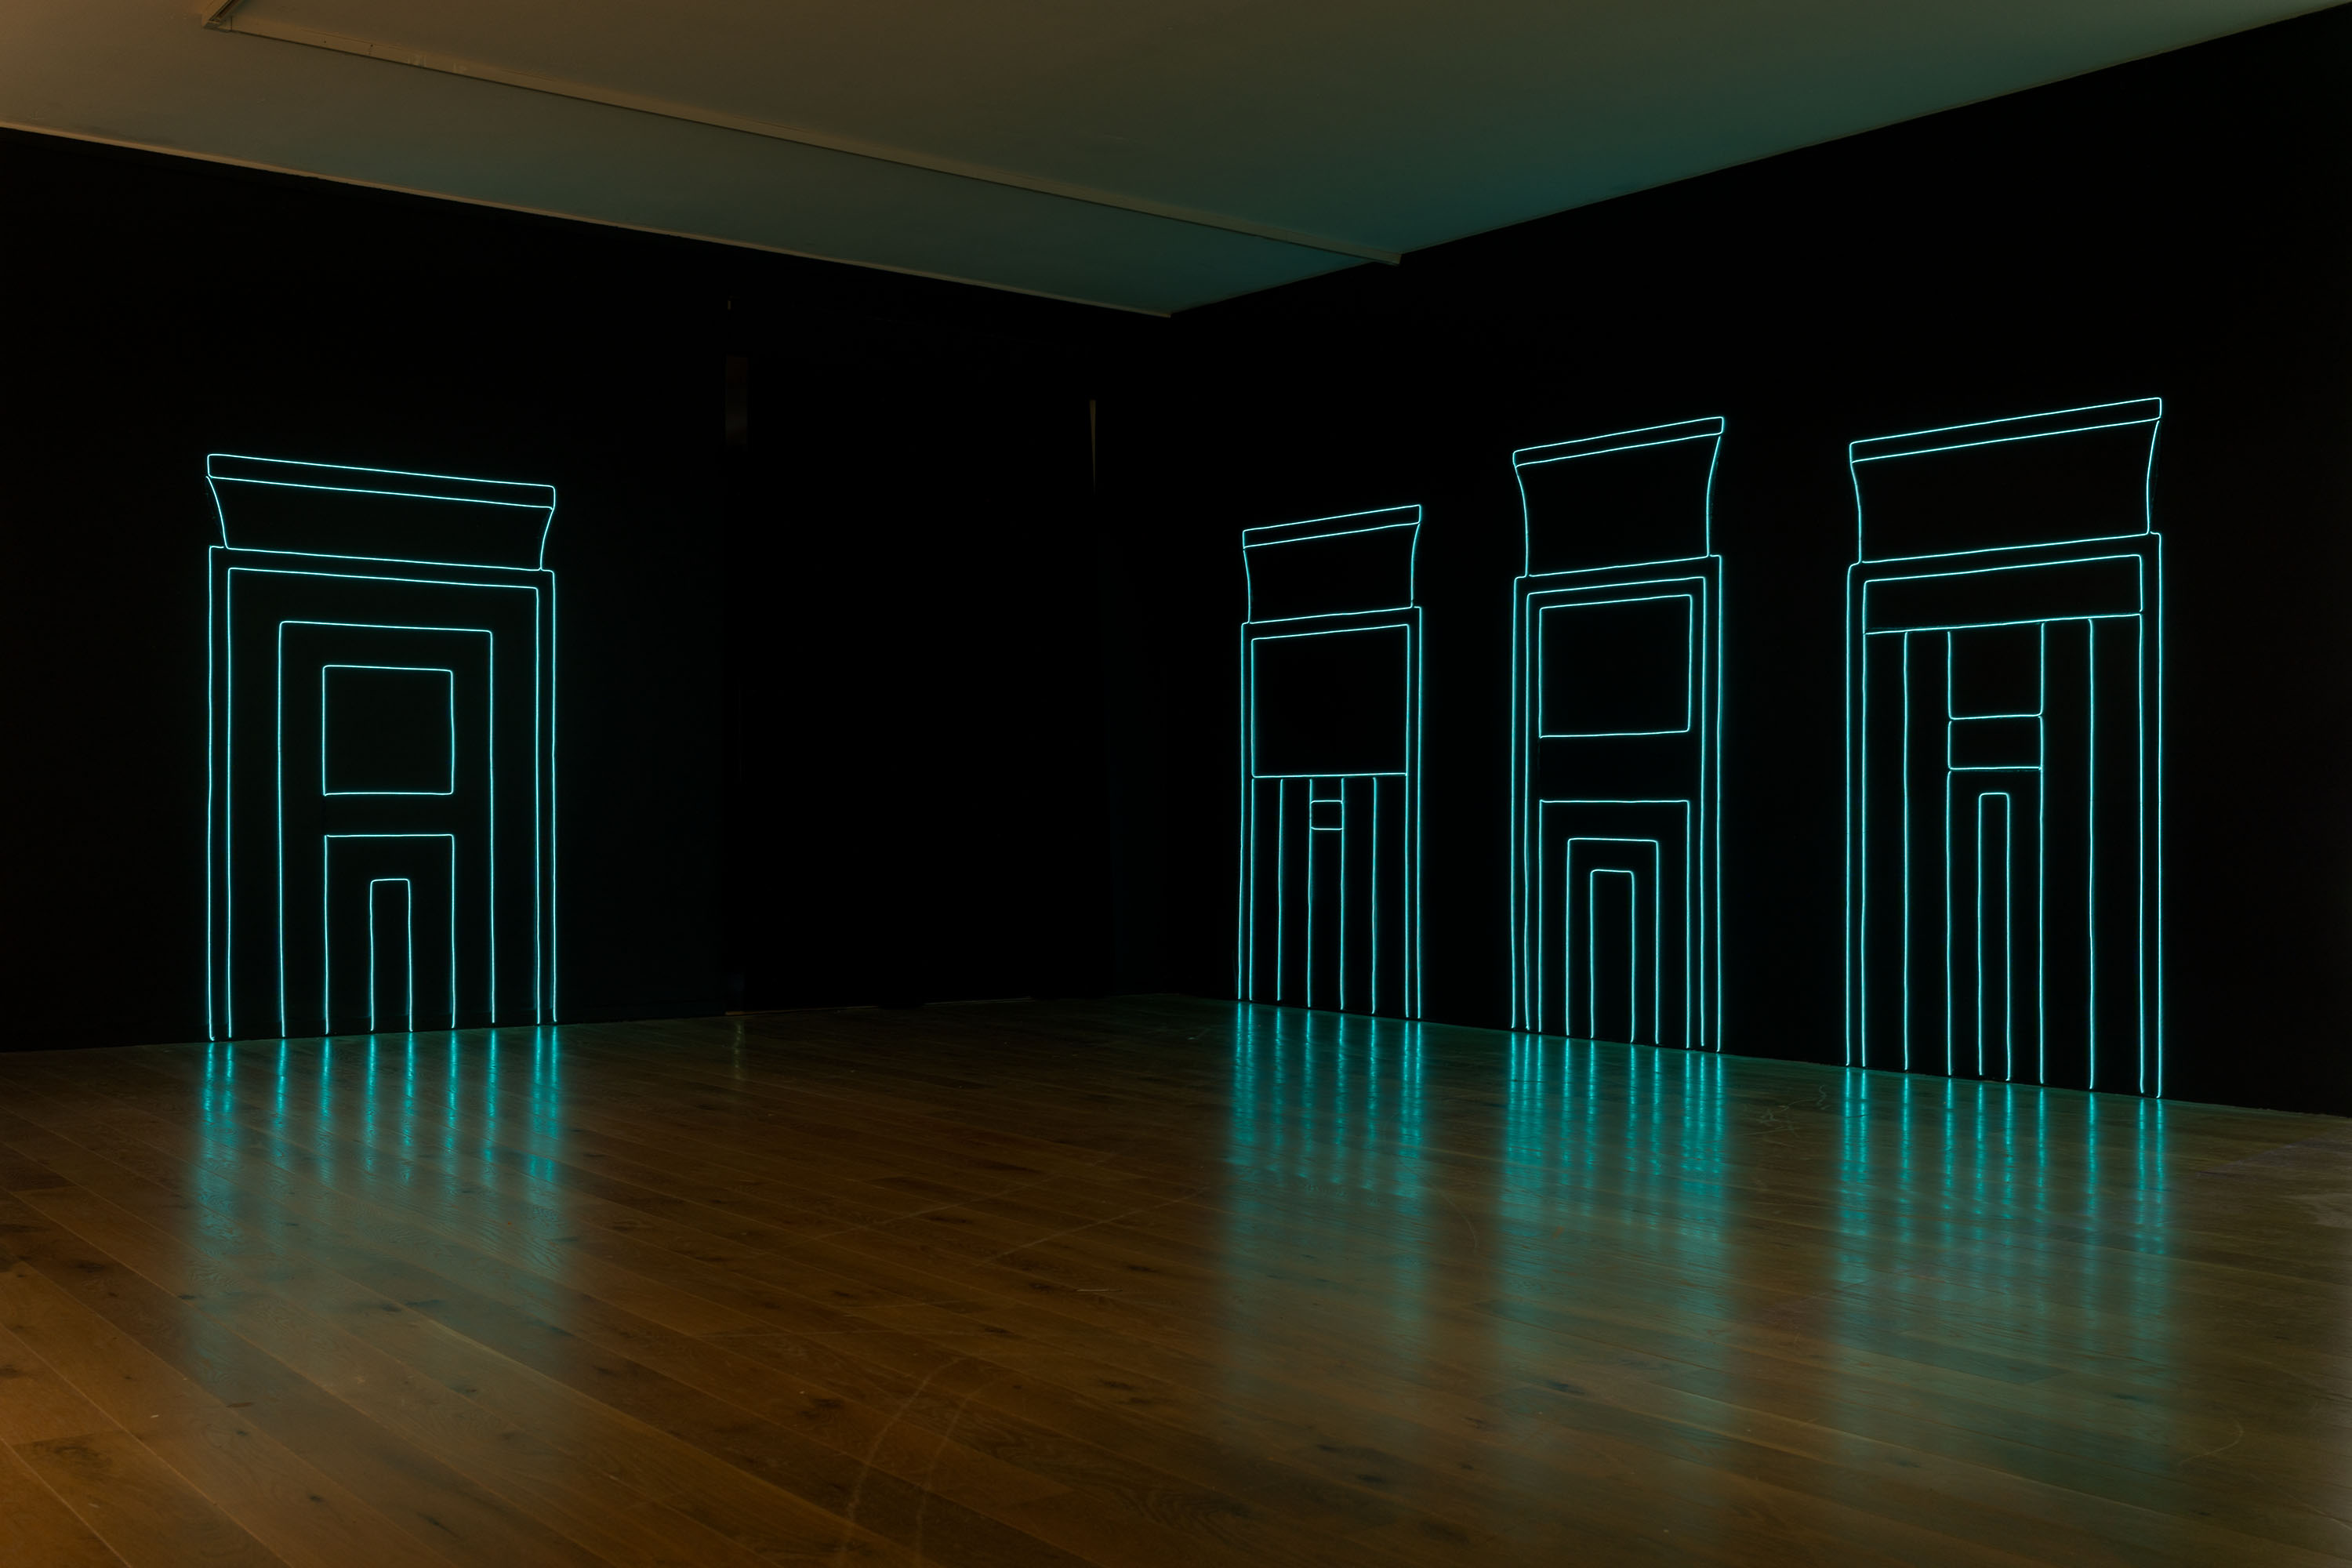 mörkt rum med svarta väggar där tre portaler formade av ljustråd är uppspända